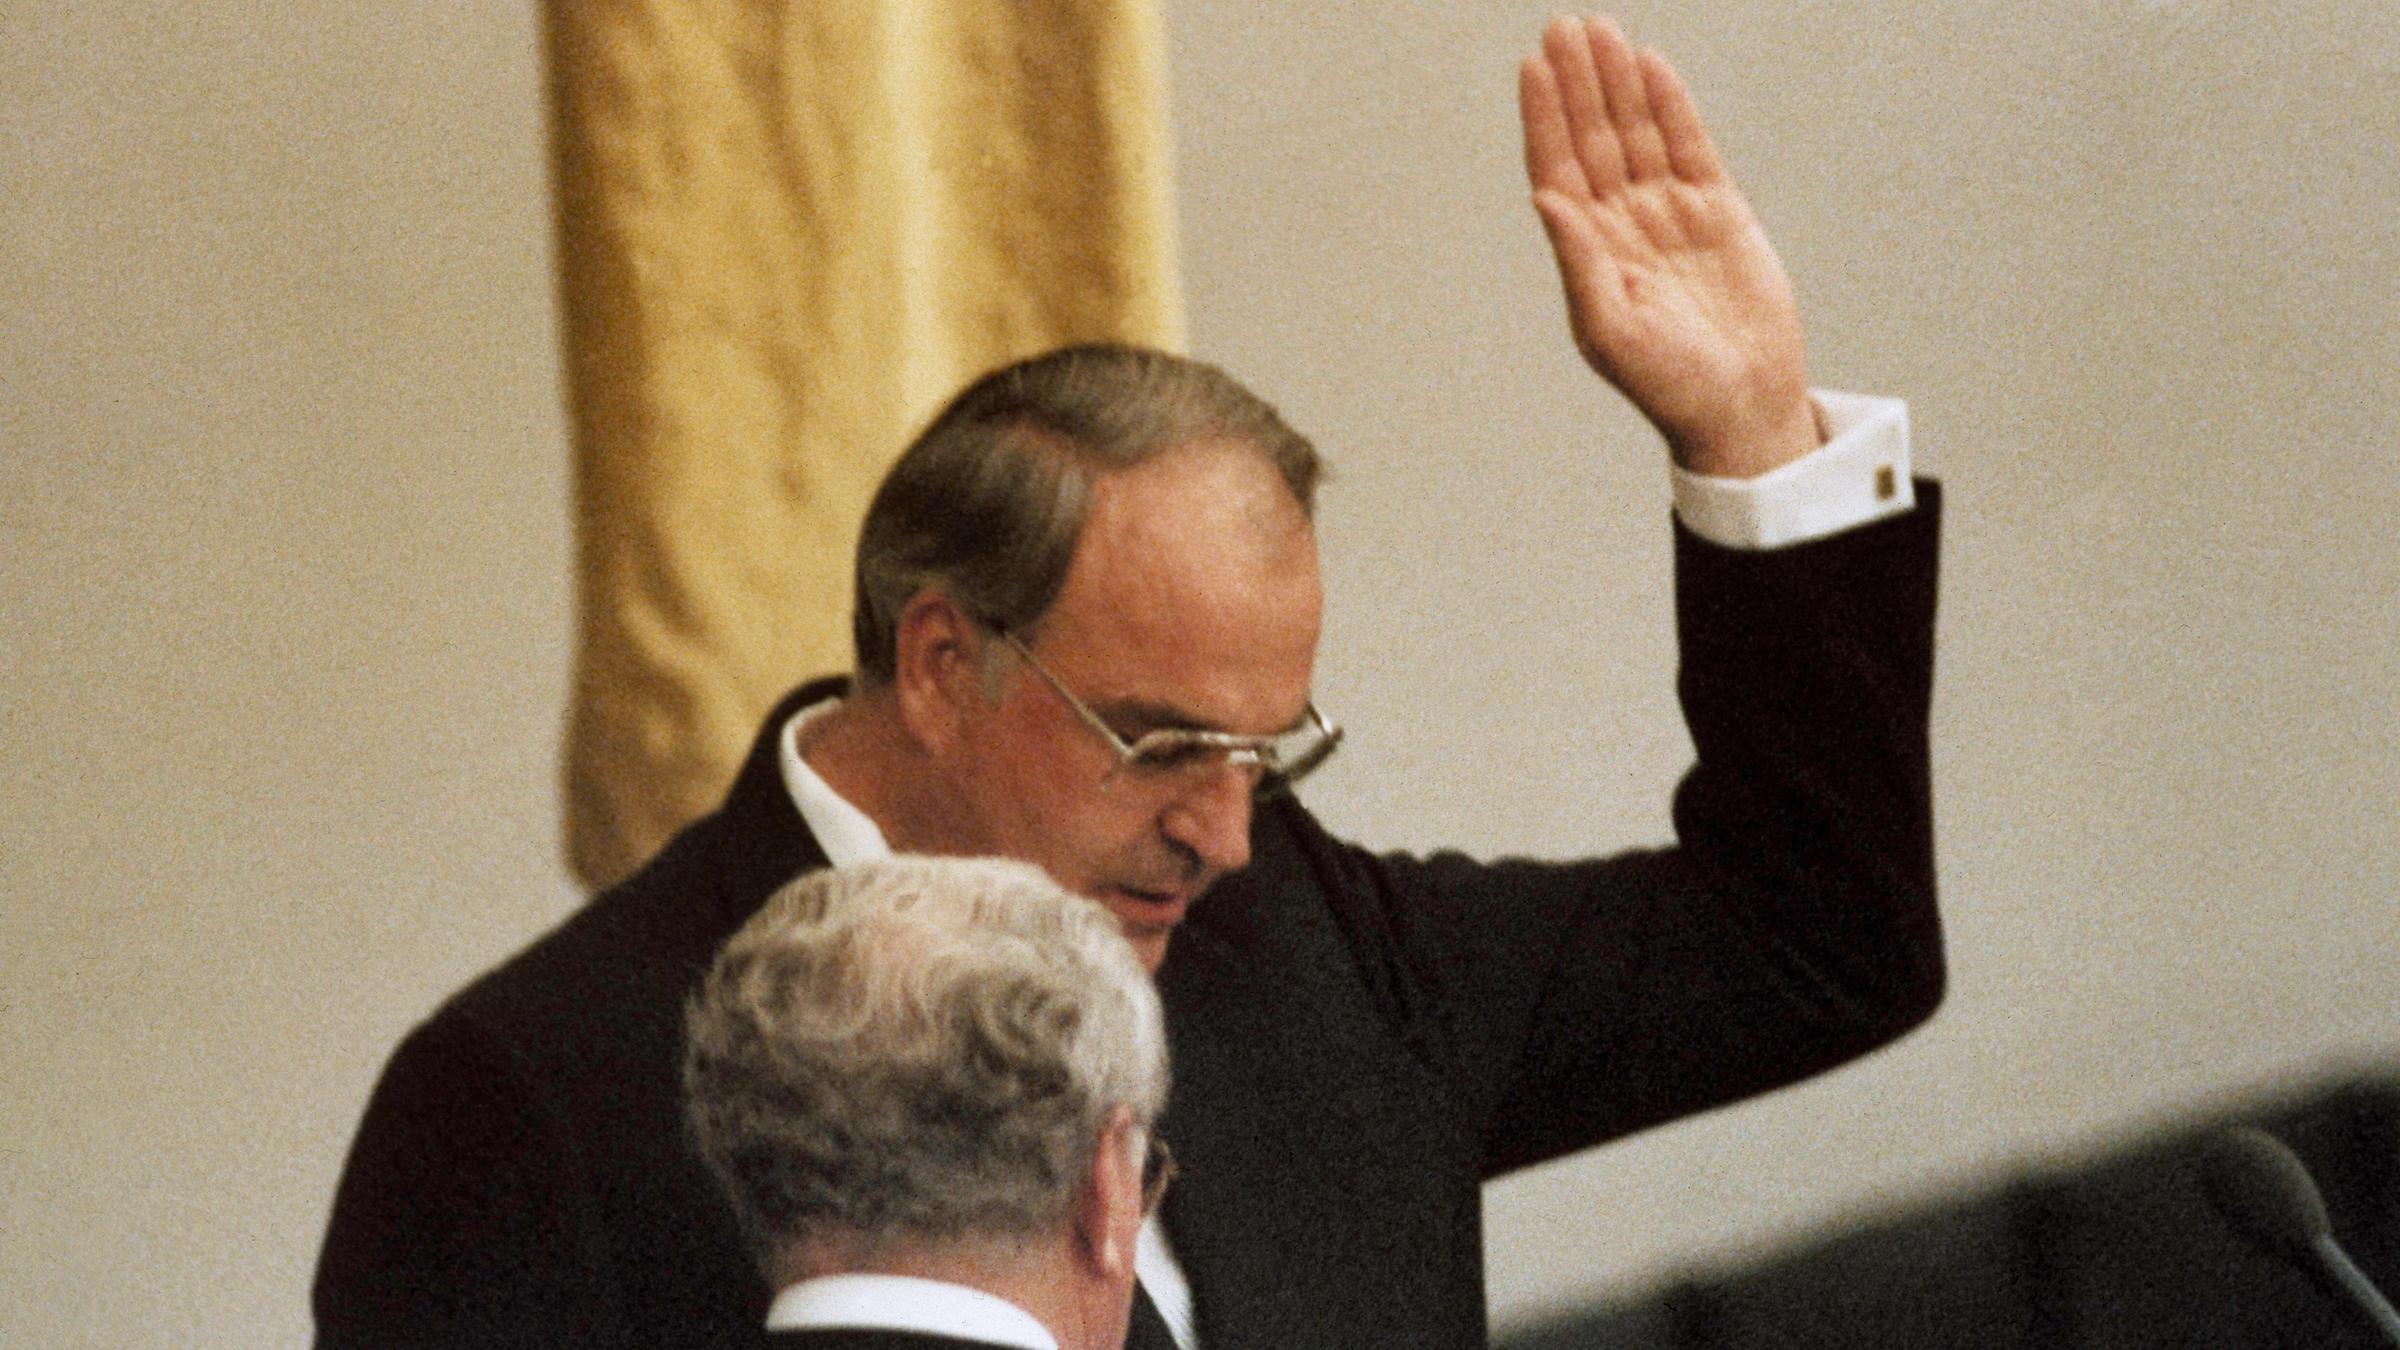 1. Oktober 1982: Der neue Bundeskanzler Helmut Kohl (CDU) leistet seinen Amtseid vor dem damaligen Bundestagspräsident Richard Stücklen